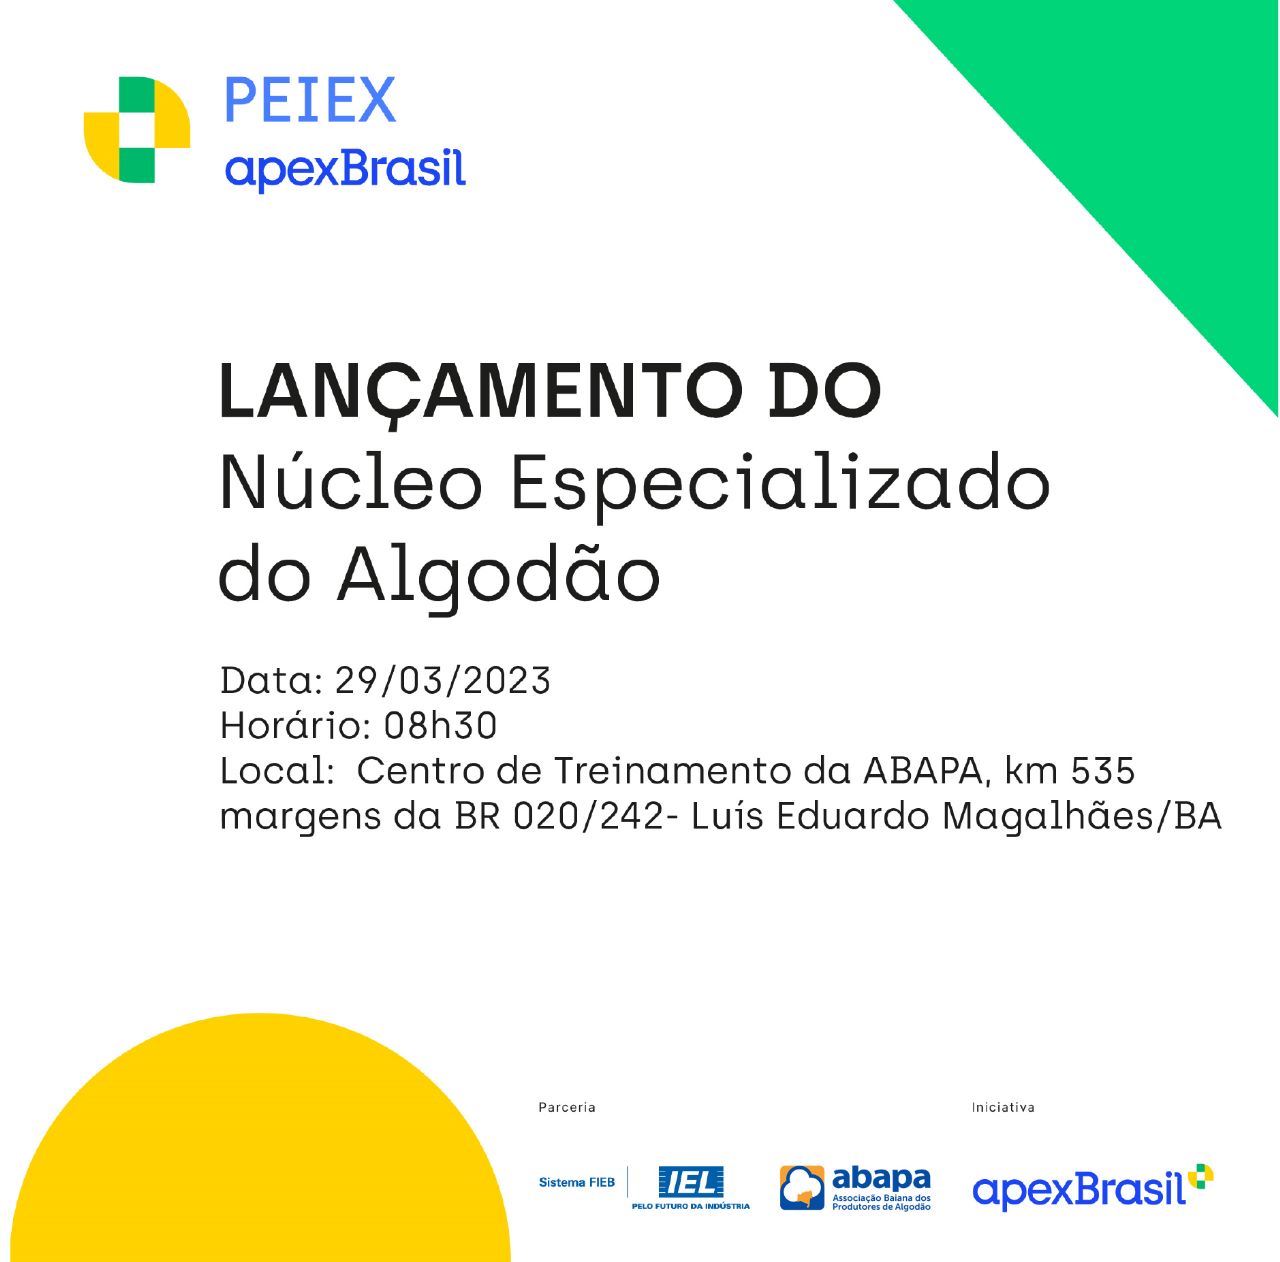 Apex-Brasil e IEL lançam Núcleo Especializado do Algodão no CT da Abapa -  Abapa - Associação Baiana dos Produtores de AlgodãoAbapa – Associação  Baiana dos Produtores de Algodão